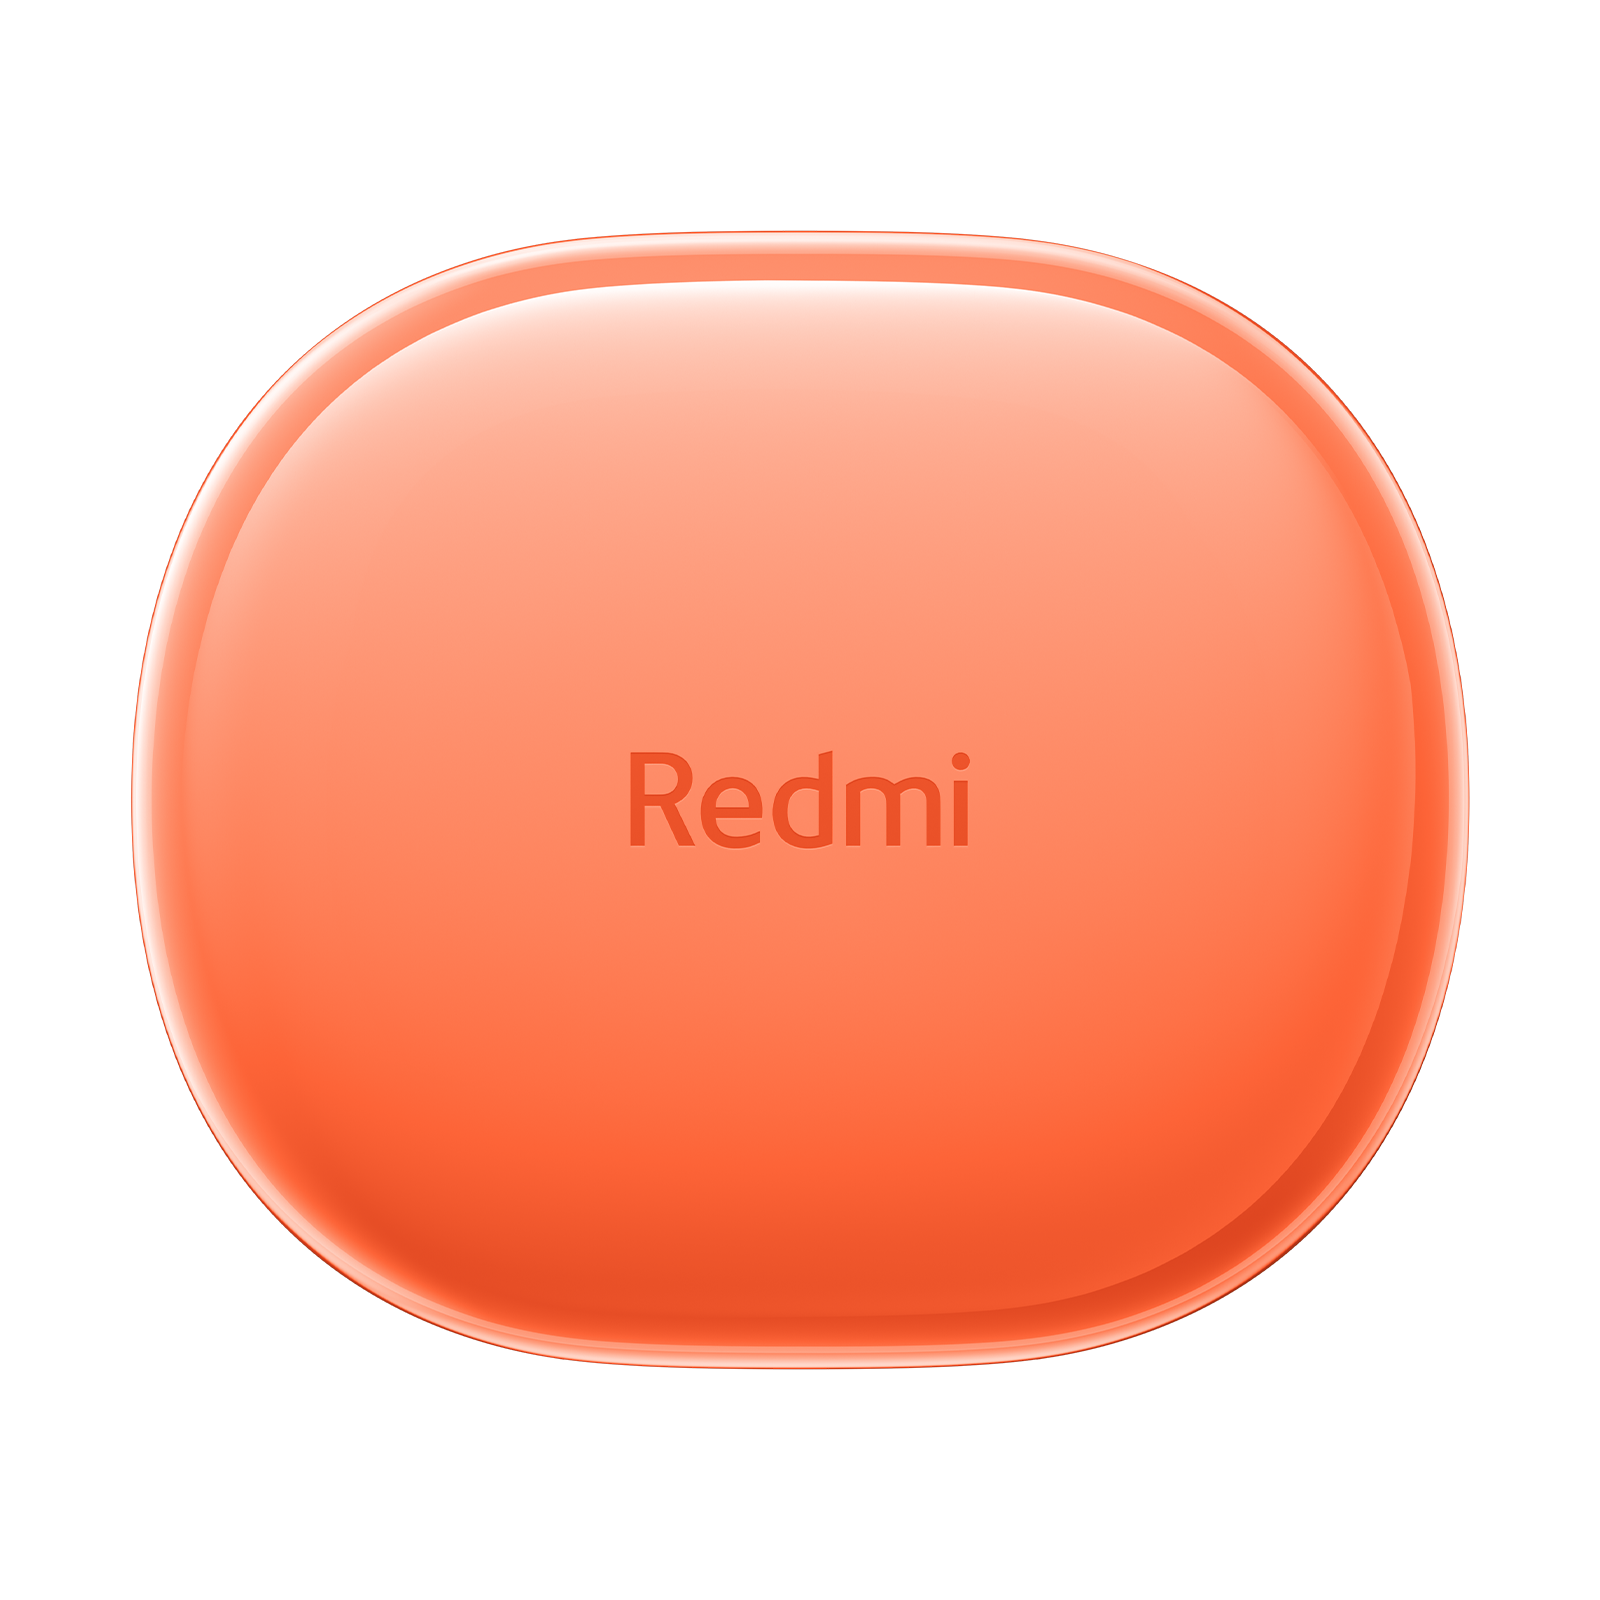 redmi-buds-4-lite - Xiaomi Nederland